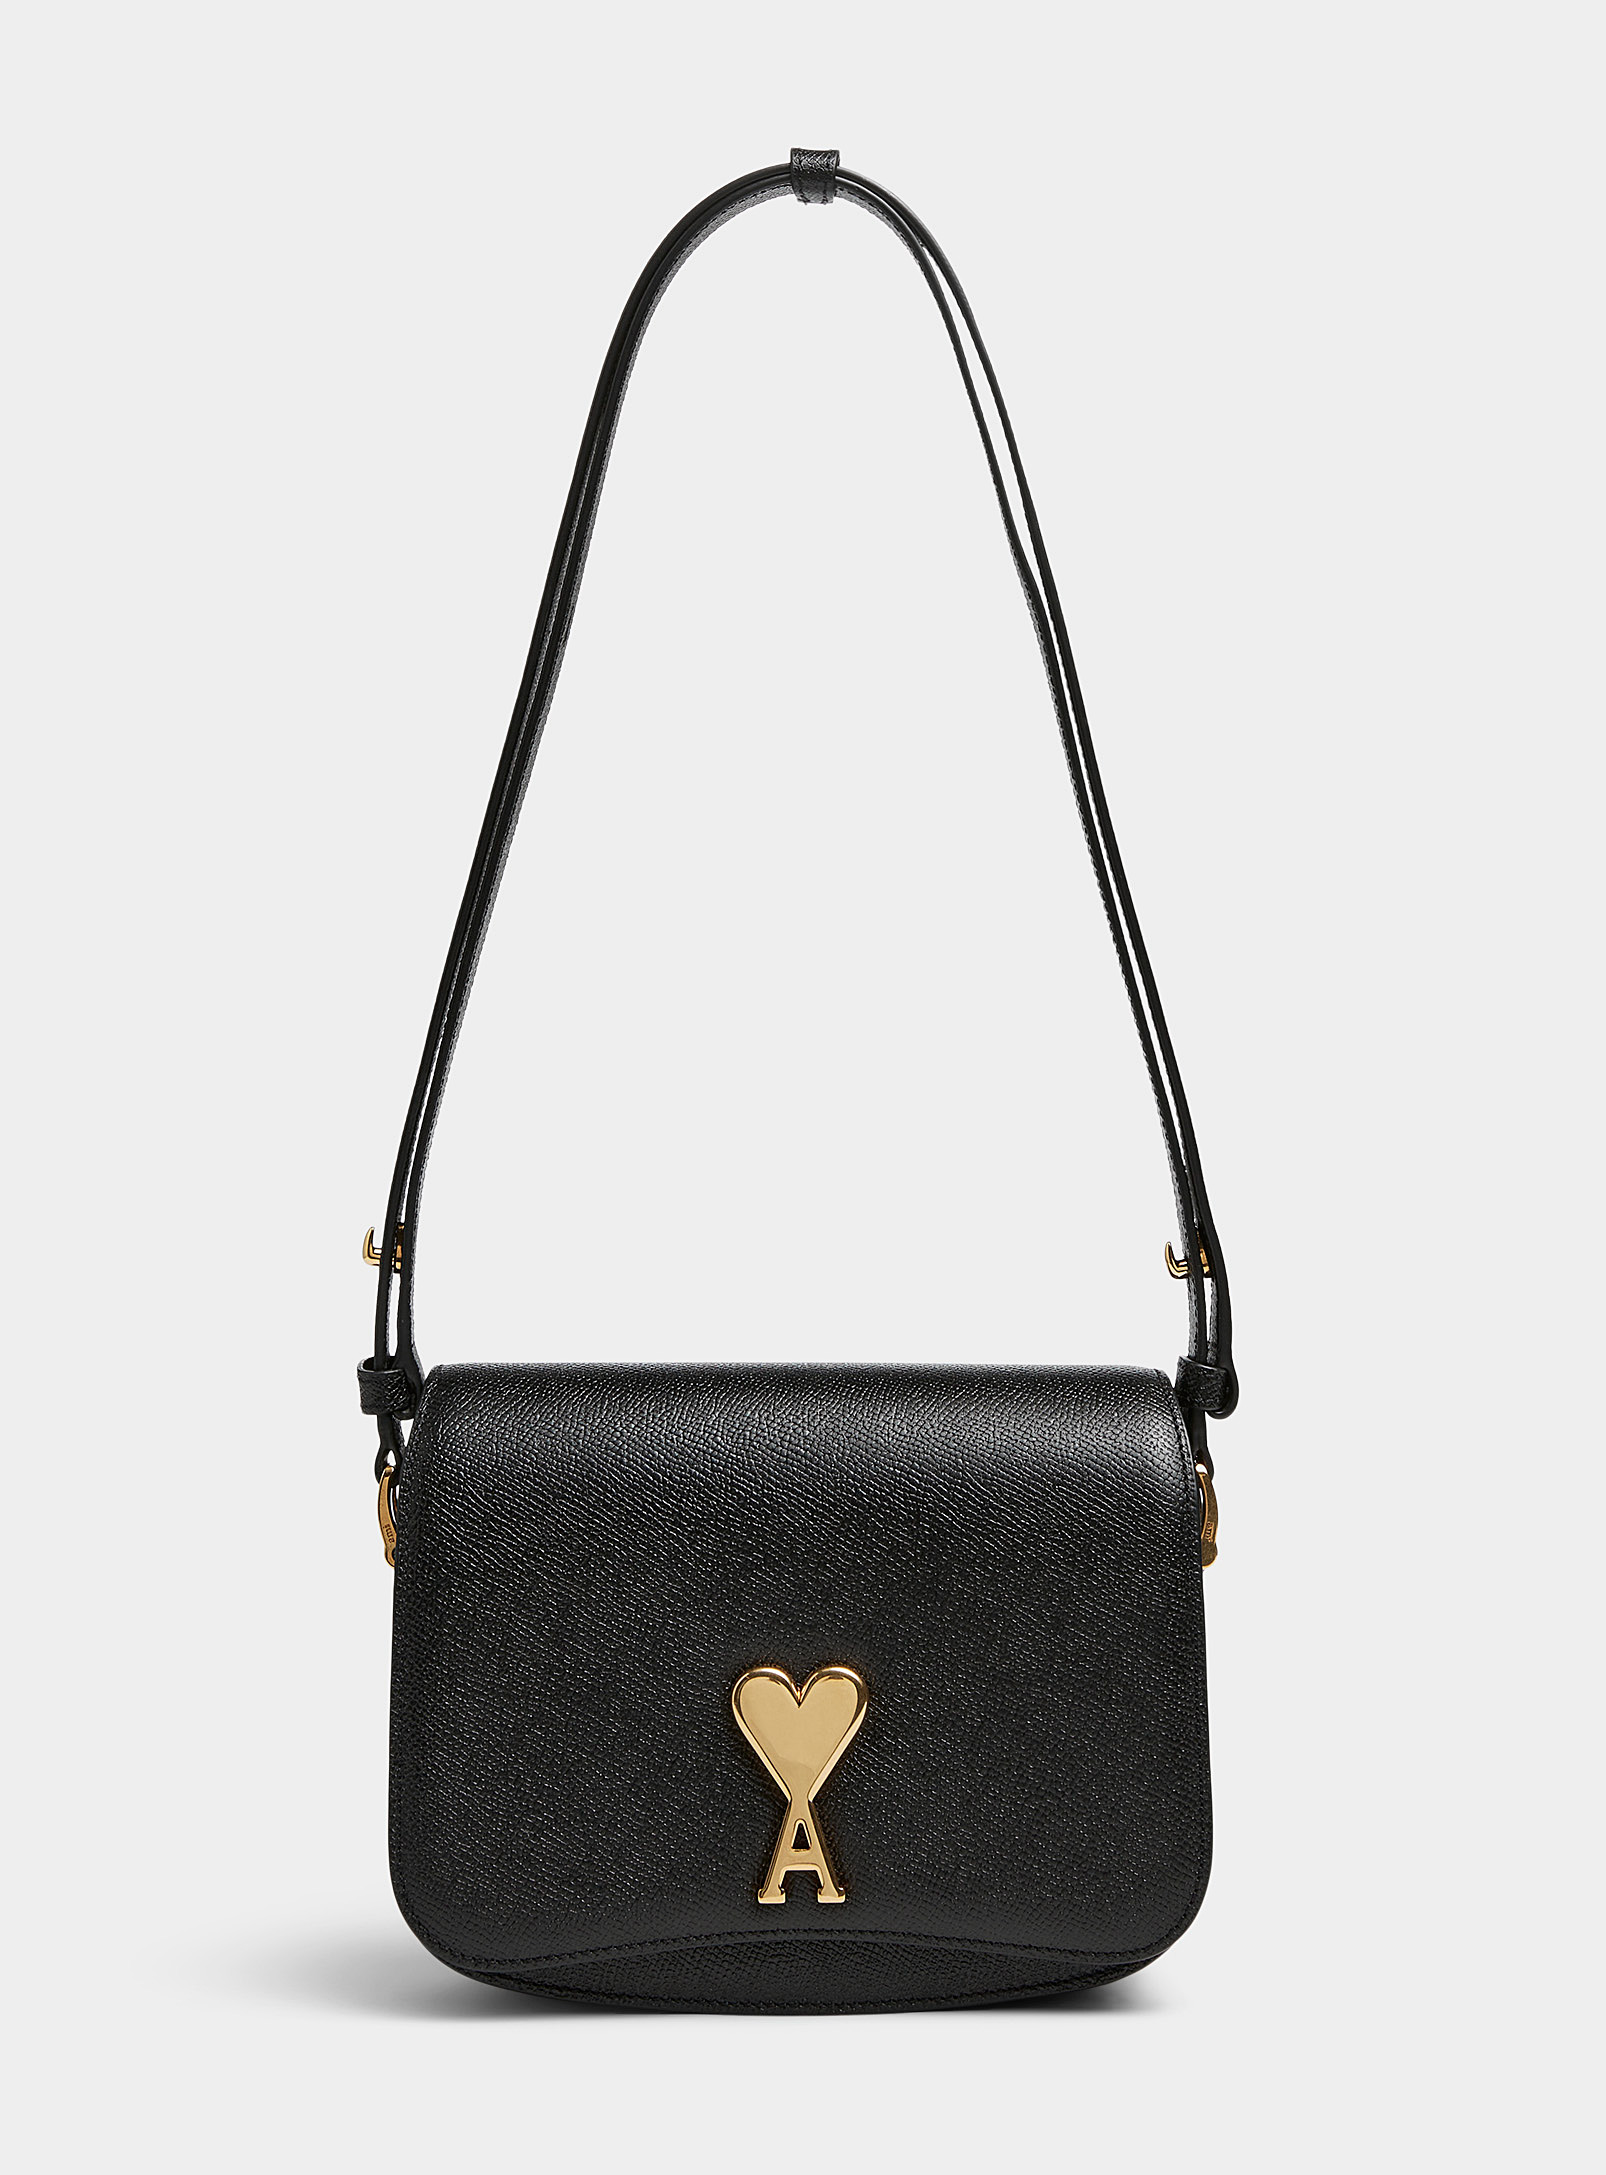 Ami Alexandre Mattiussi Paris Paris Small Handbag In Black